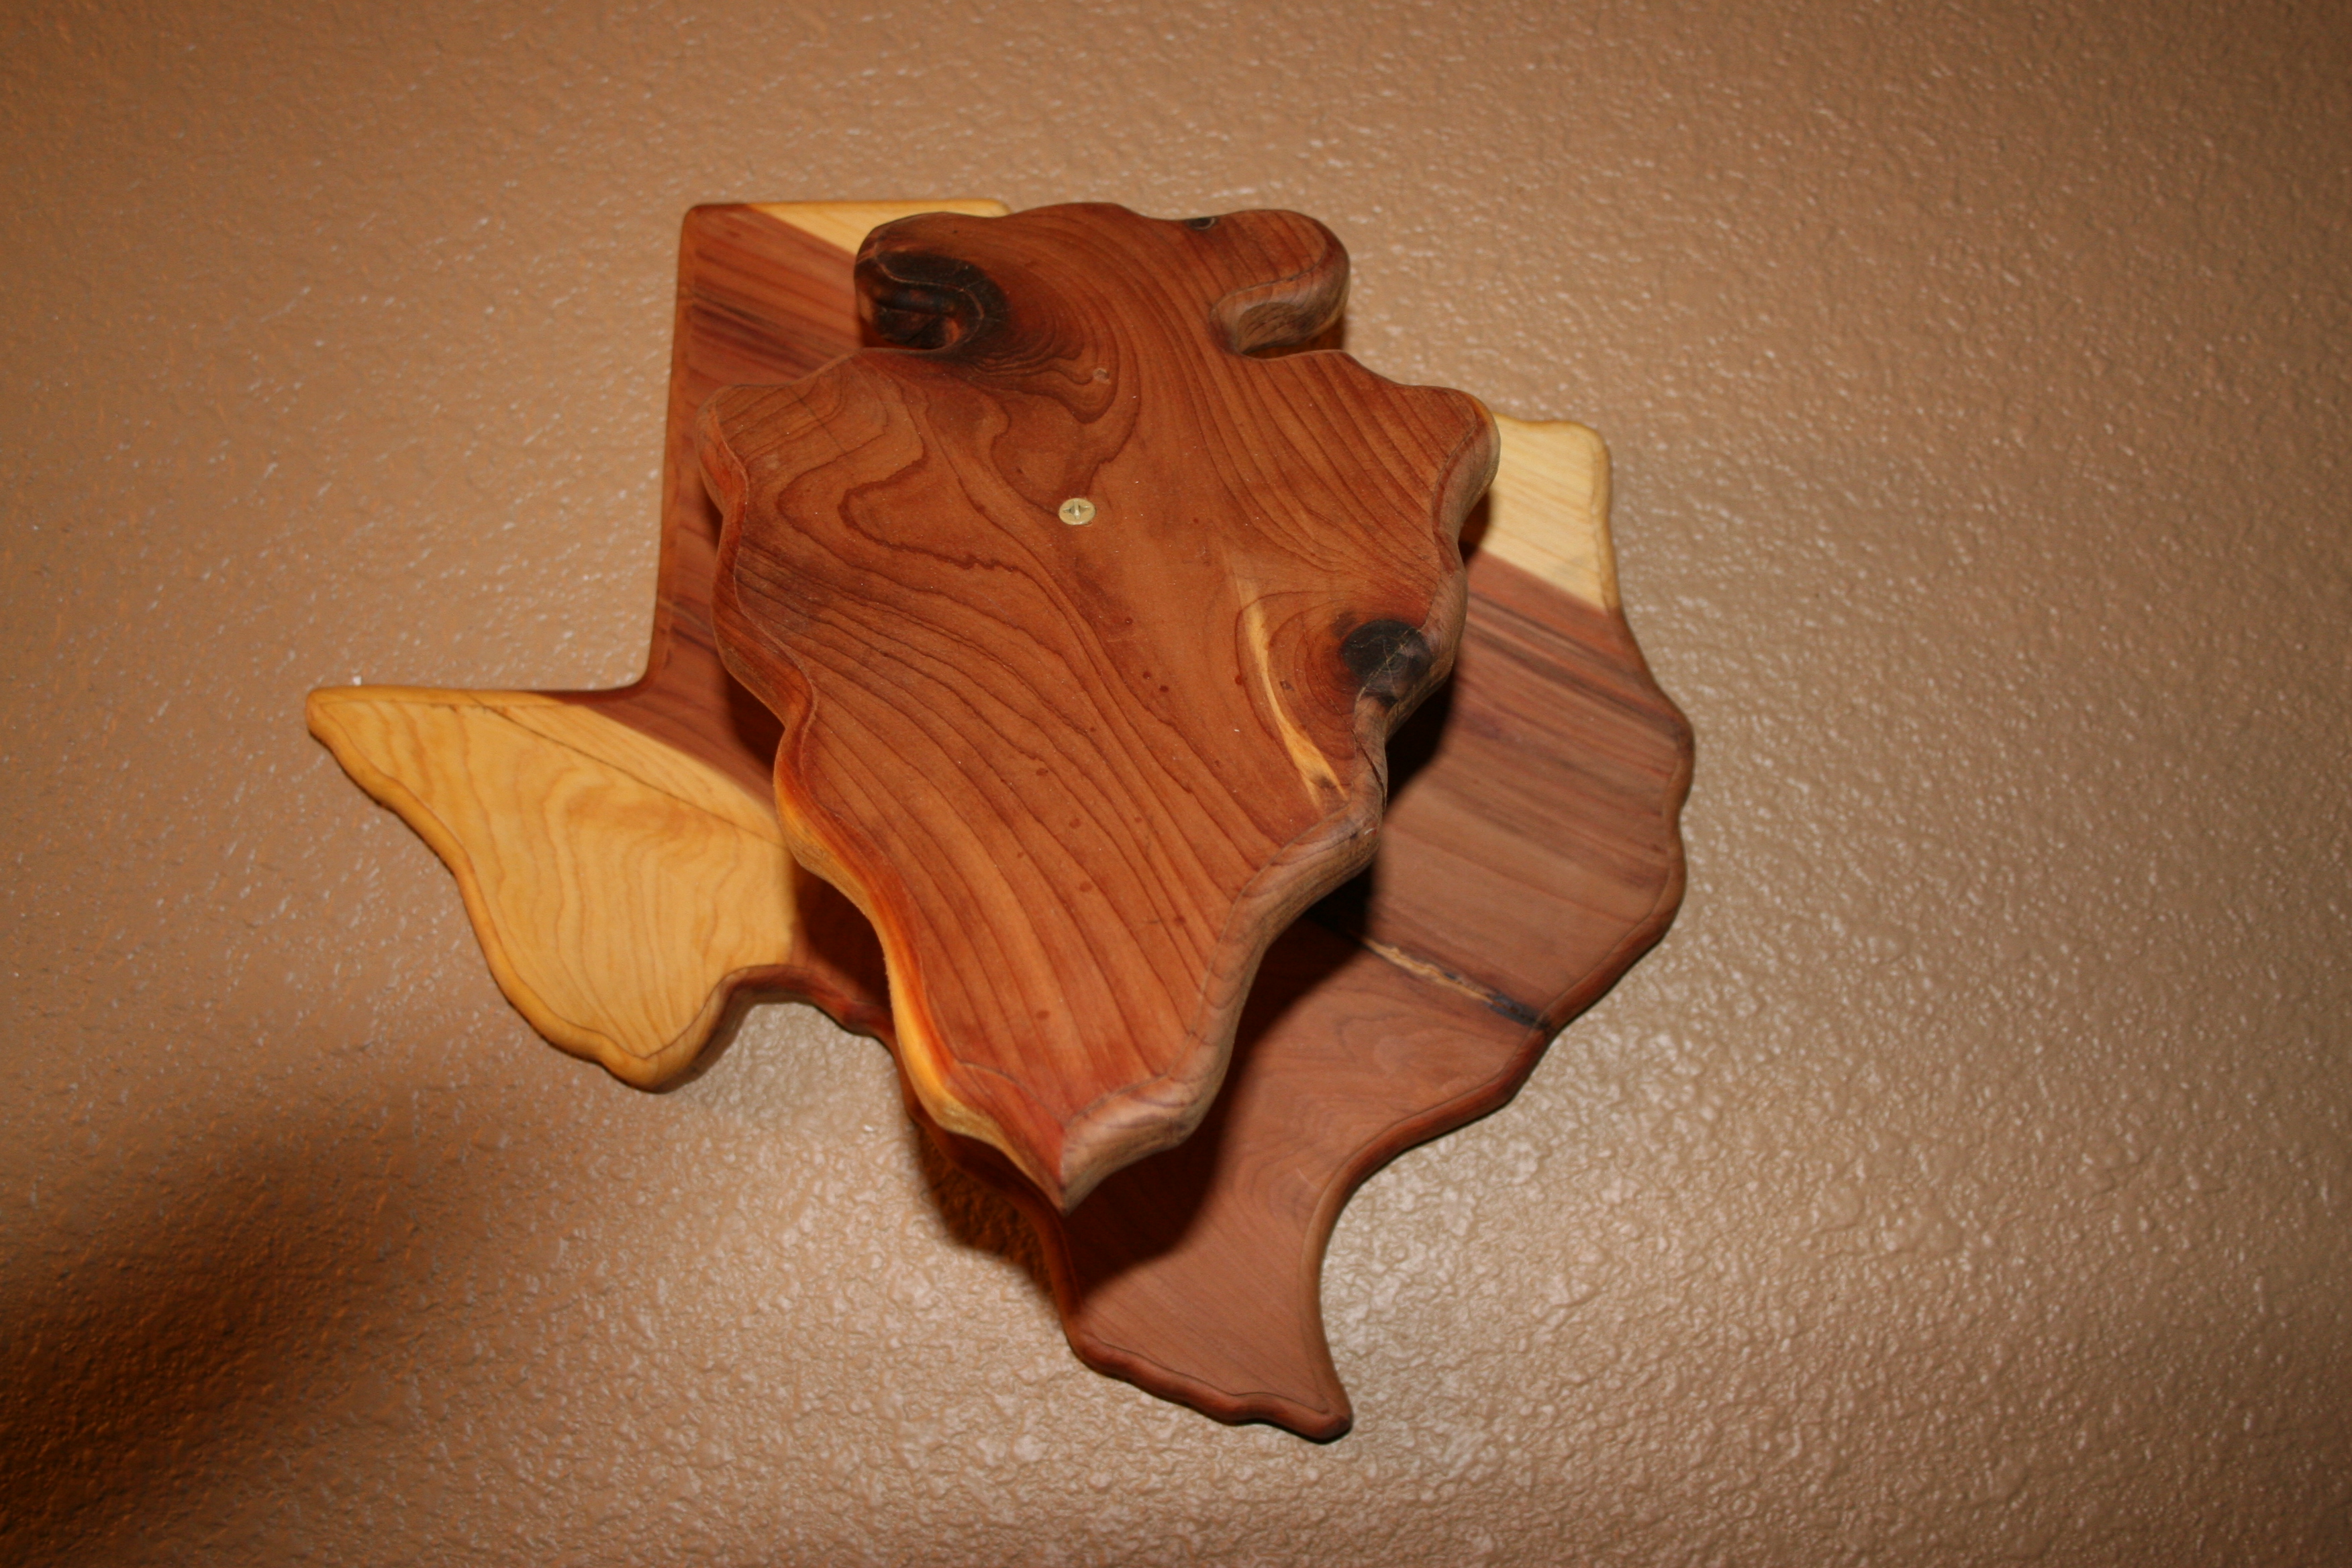 Cedar Texas with arrowhead